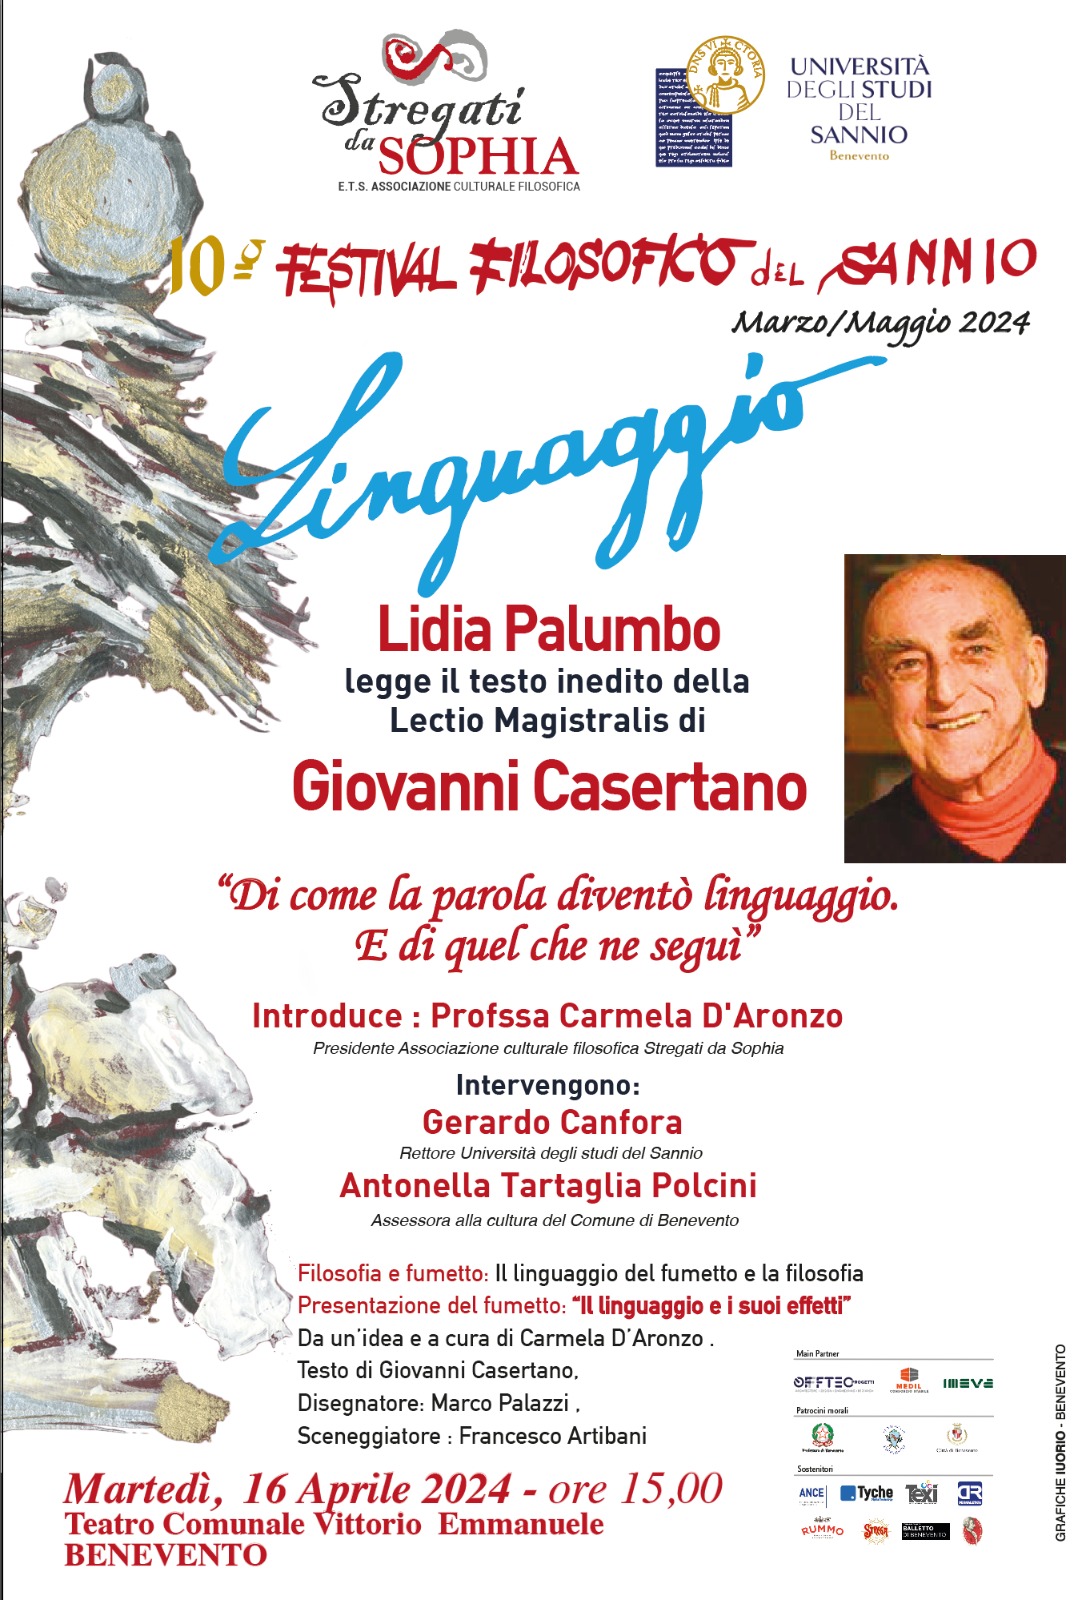 Festival Filosofico del Sannio: Lidia Palumbo leggerà il testo inedito della Lectio Magistralis di  Giovanni Casertano